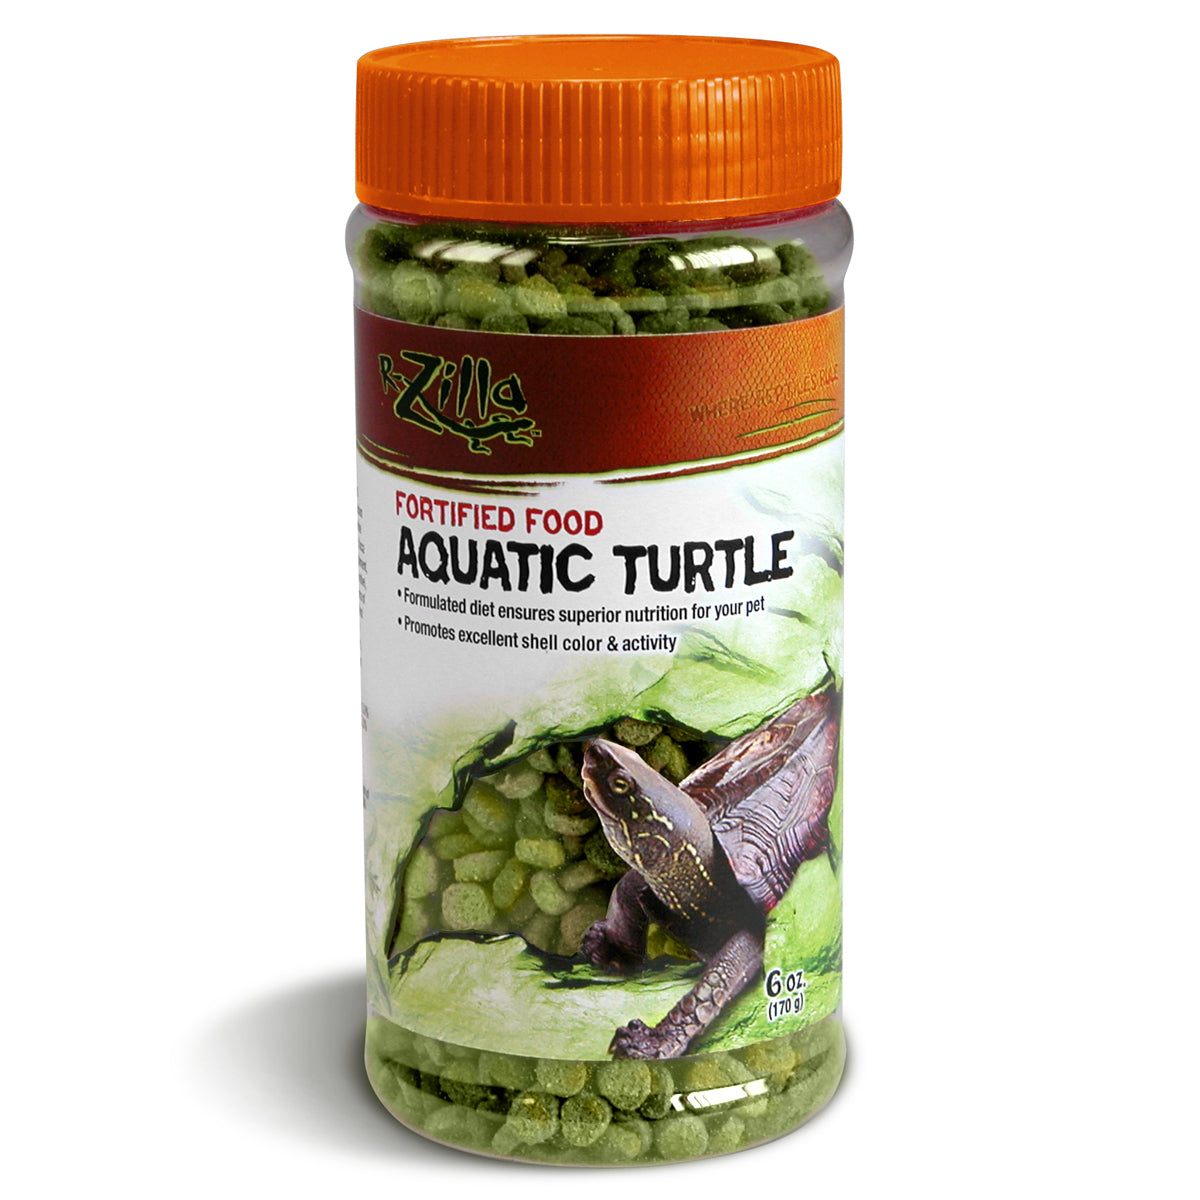 Zilla Fortified Aquatic Turtle Food - 6 oz